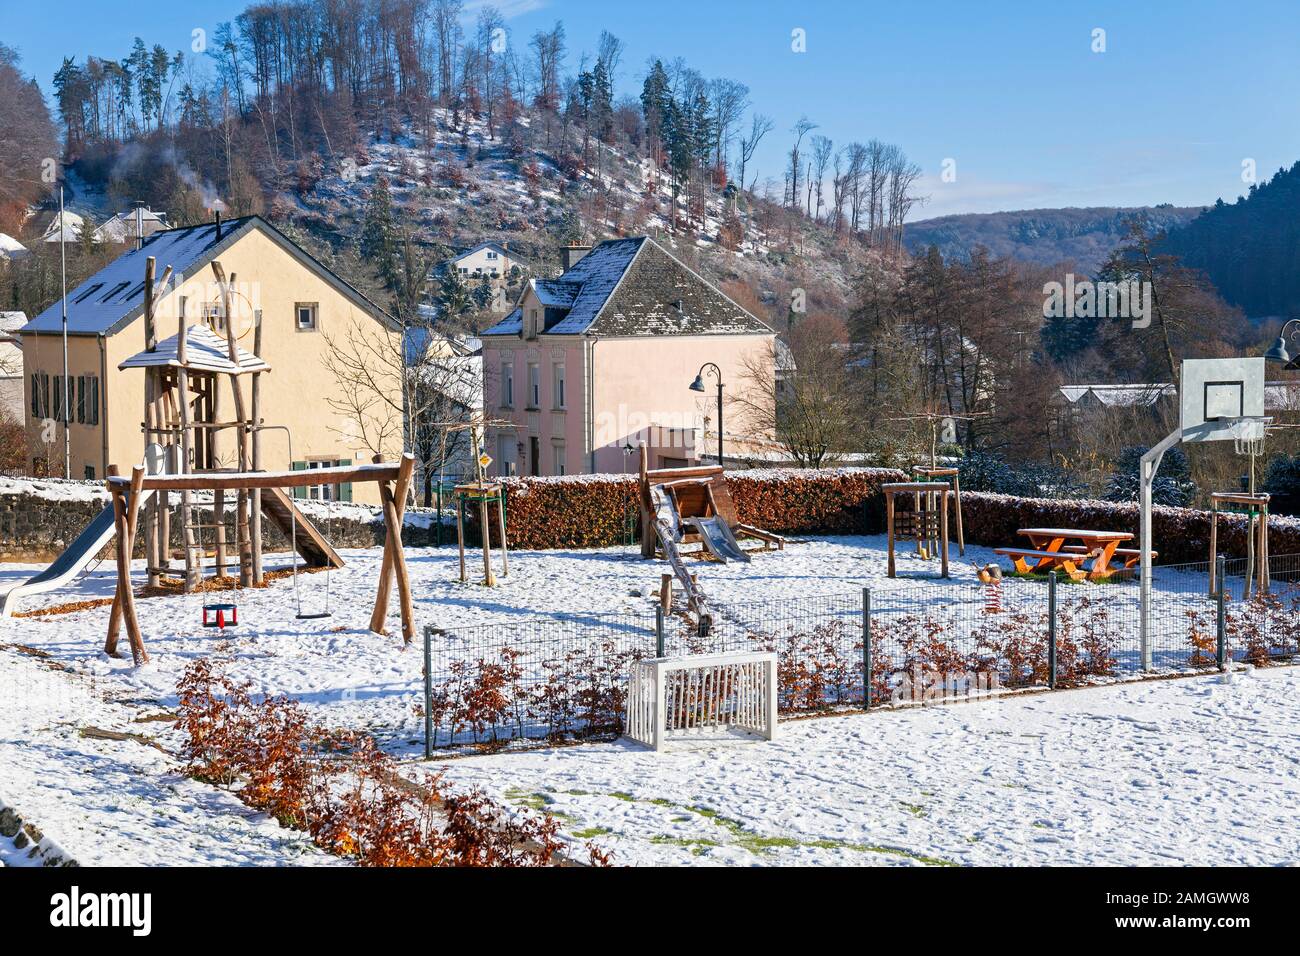 Europa, Luxemburg, Septfontaines, Spielbereich Für Kinder in der Nähe der Grundschule am Mierscherstrooss im Schnee Stockfoto